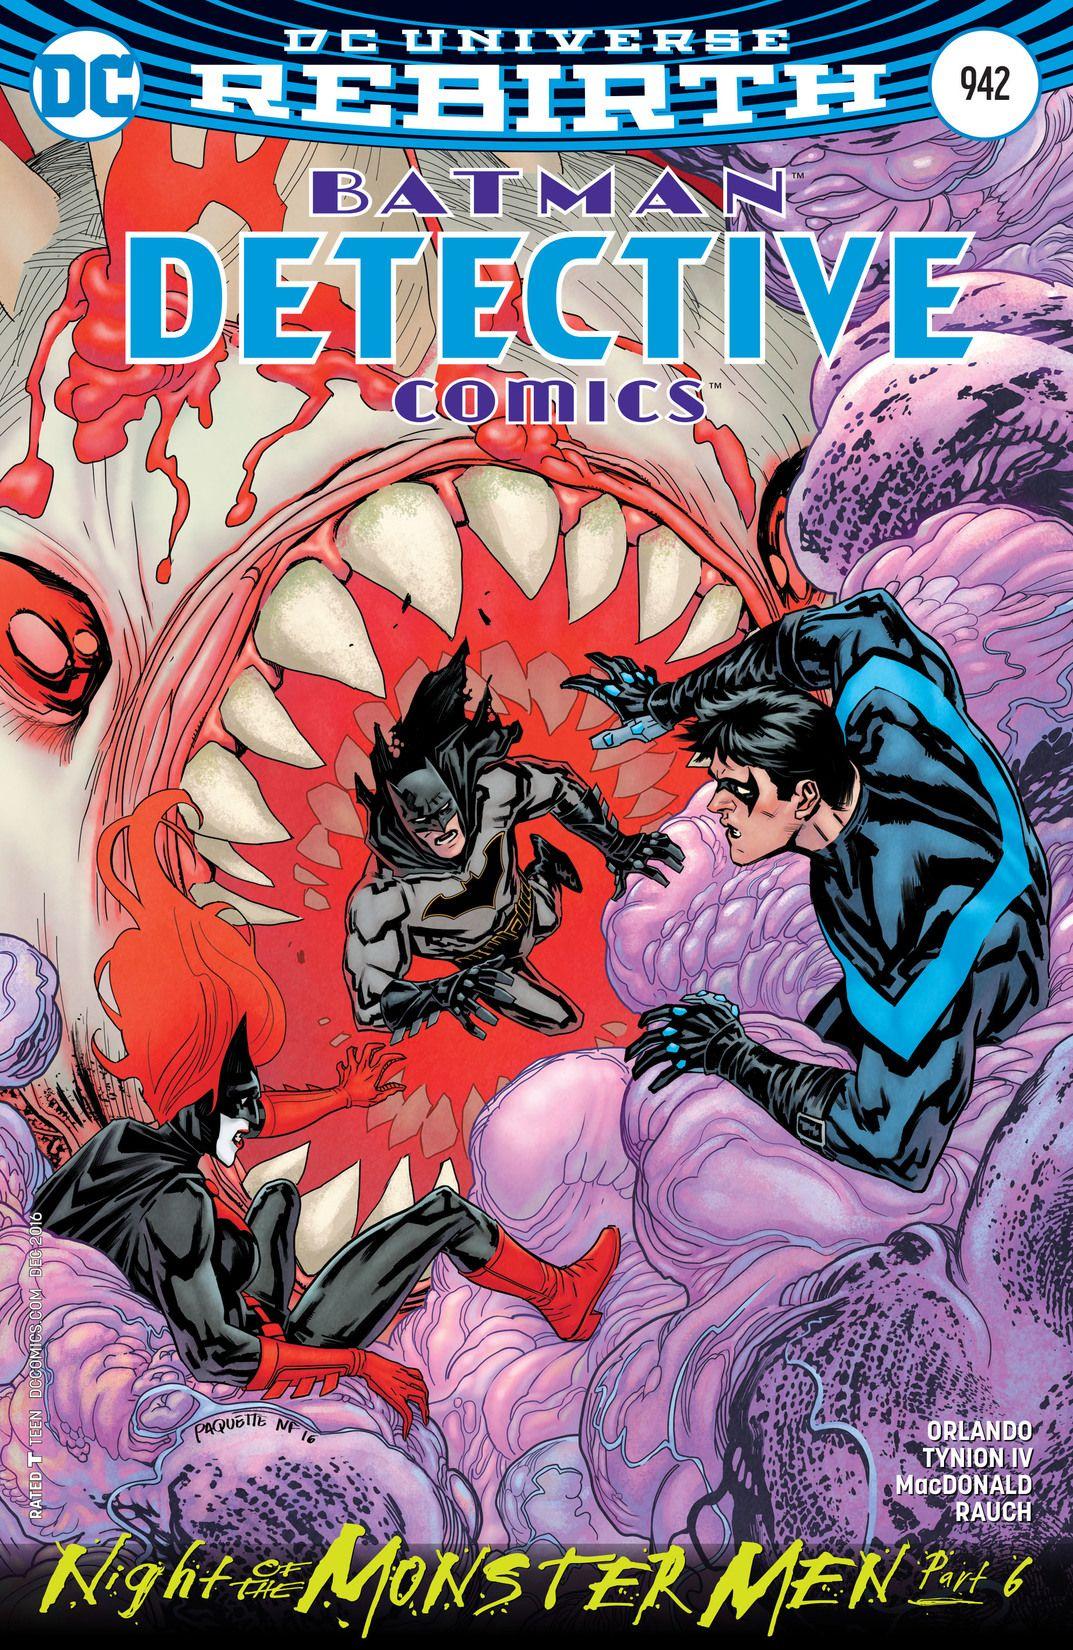 Detective Comics Vol. 1 #942